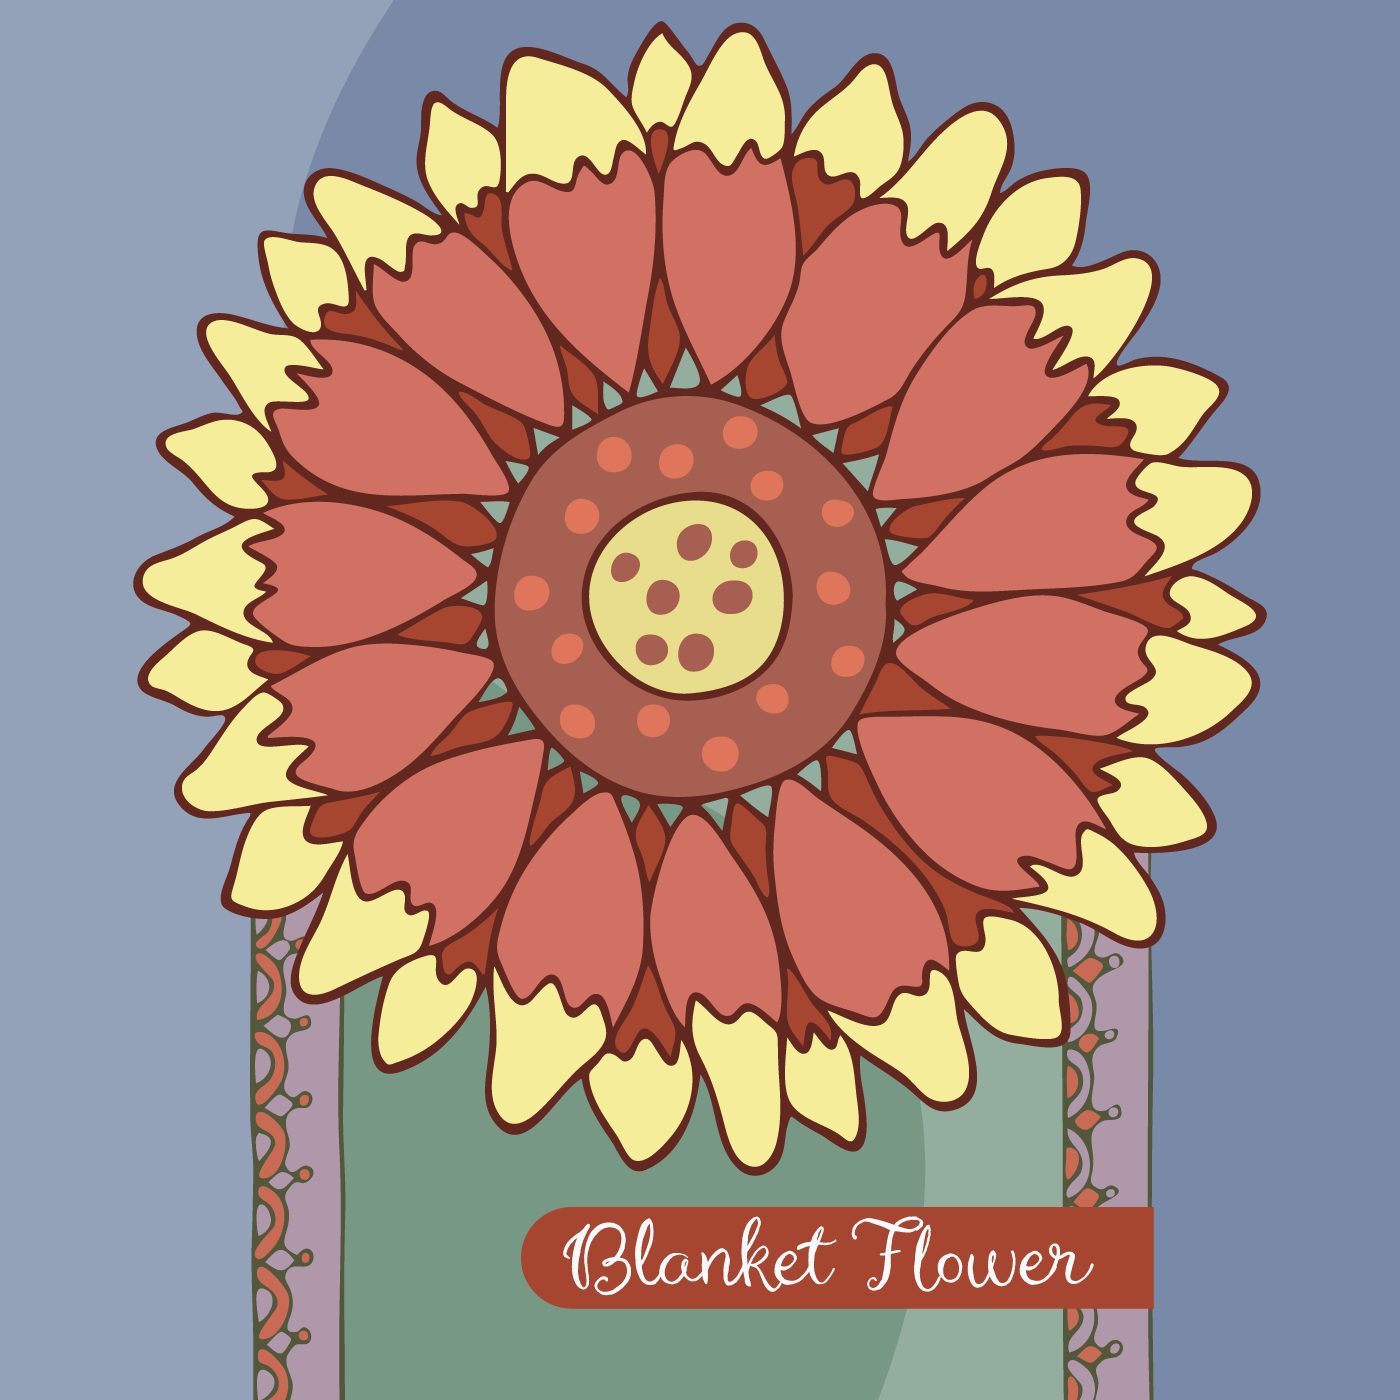 Blanket Flower